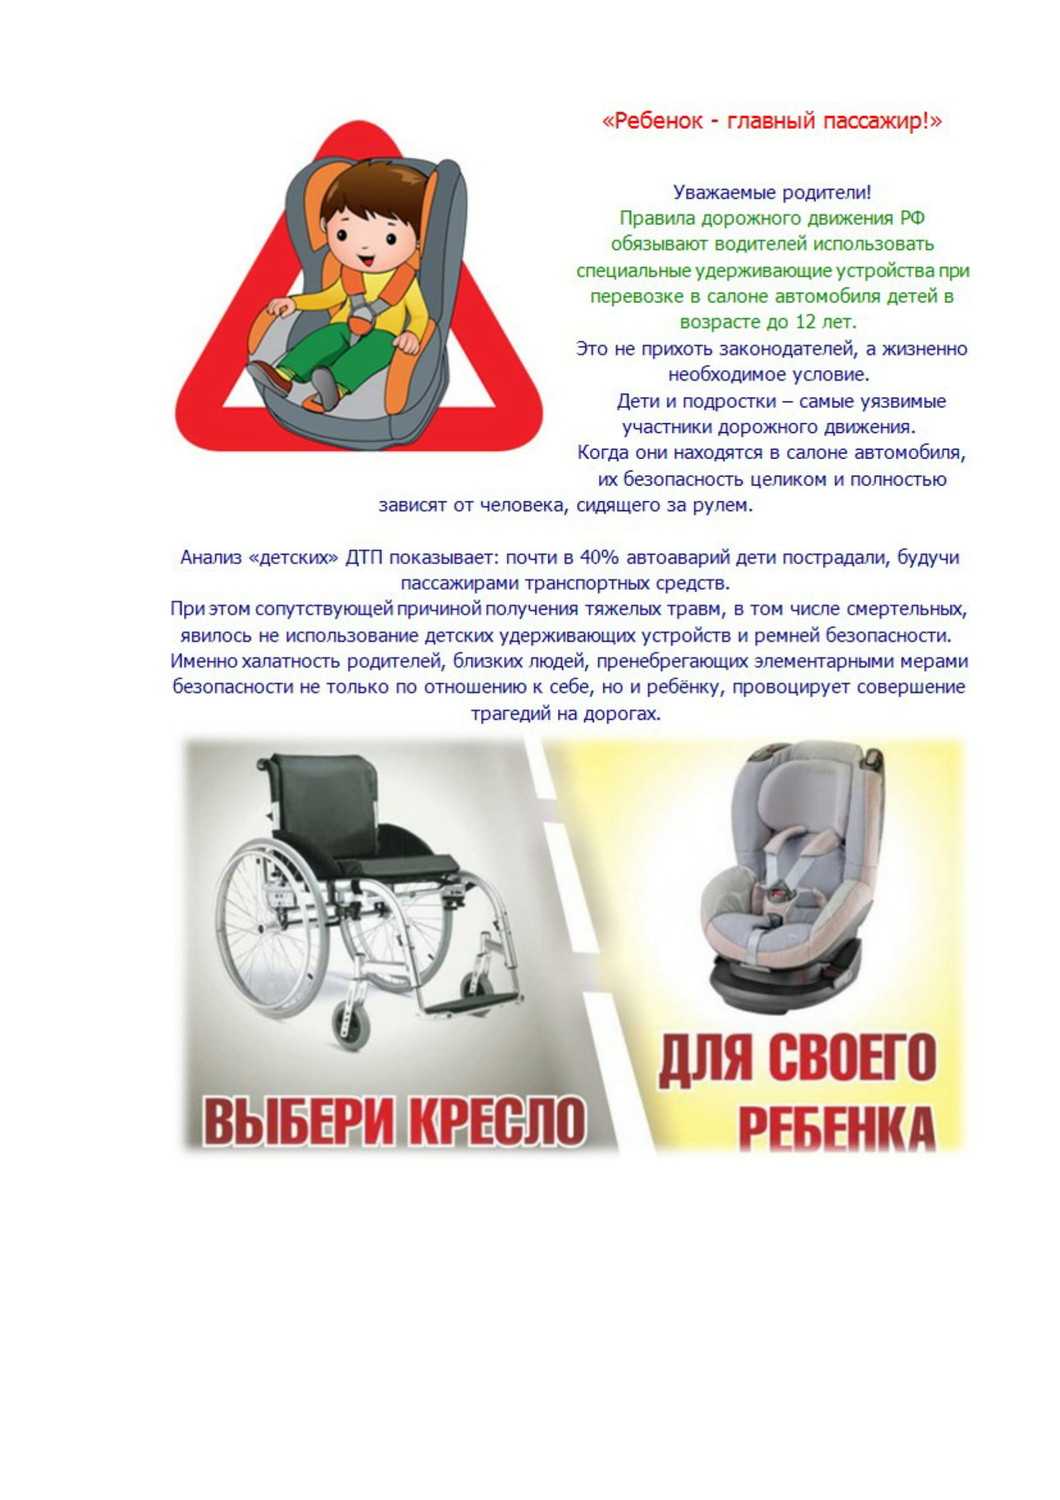 Ответственность за перевозку детей без детского кресла